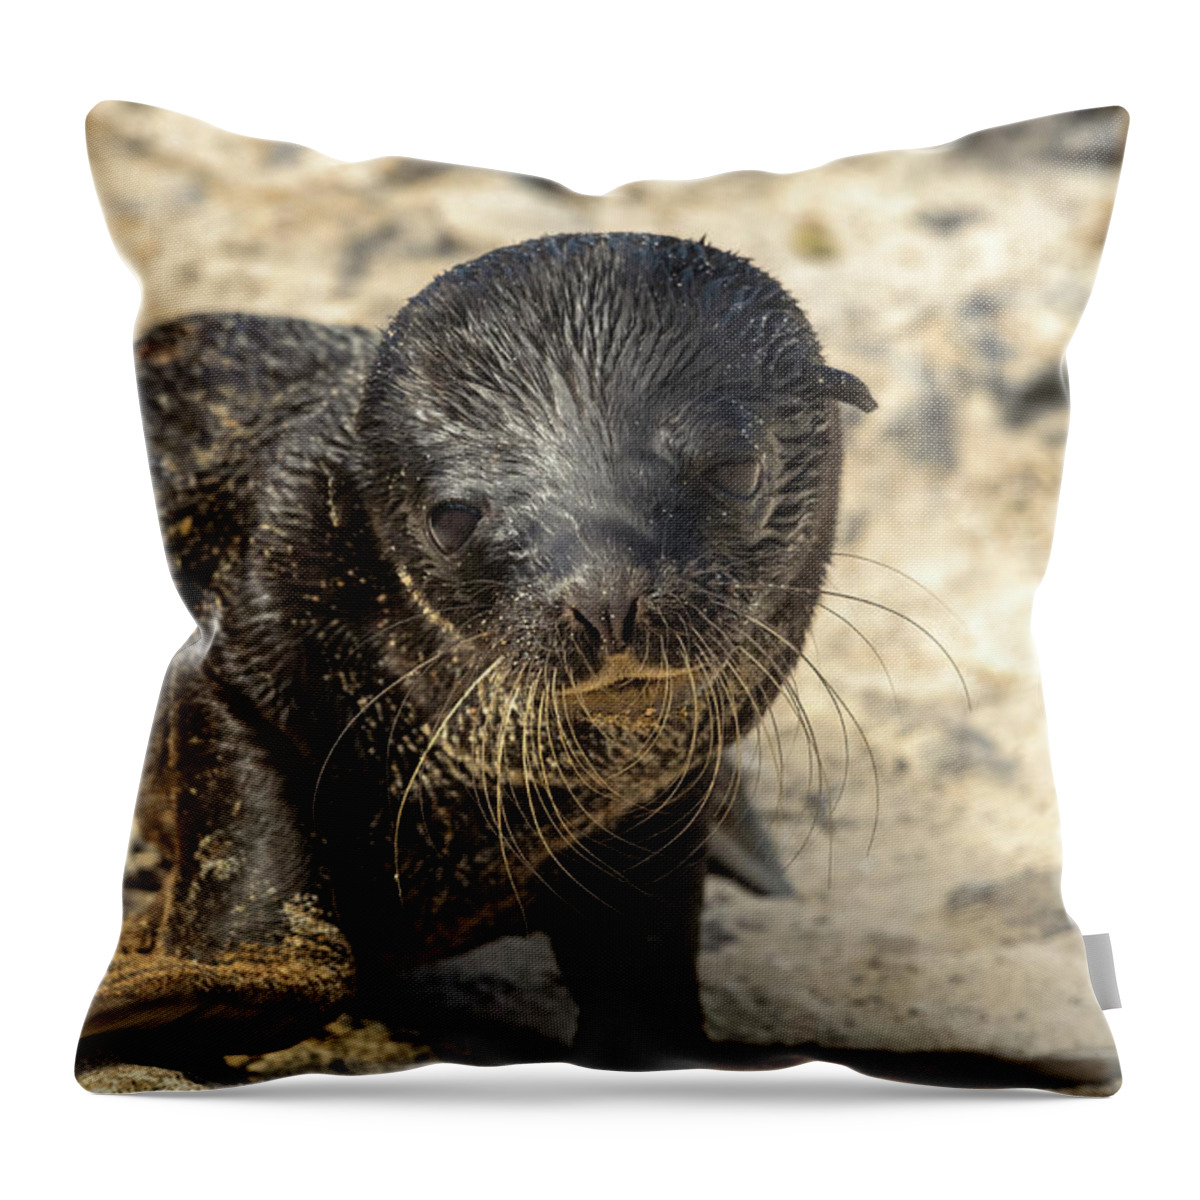 Ecuador Throw Pillow featuring the photograph Baby Galapagos Seal by Adrian O Brien